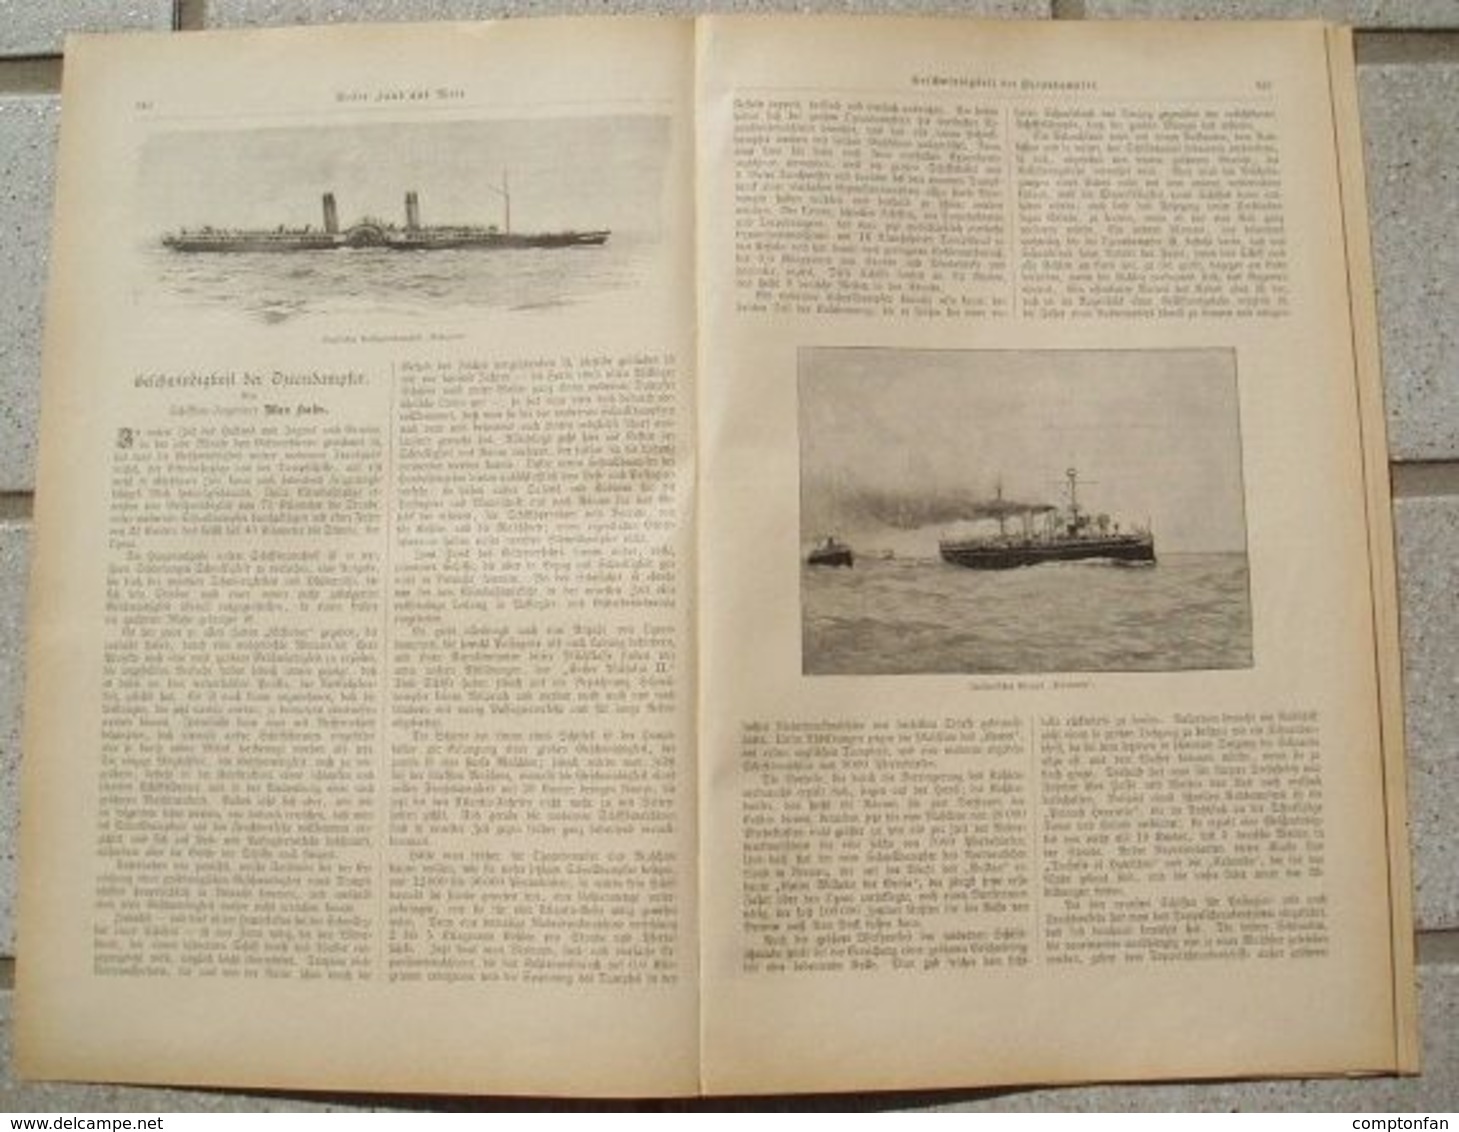 A102 089 Geschwindigkeit Der Ozeandampfer Artikel Mit 10 Bildern Von 1897 !! - Verkehr